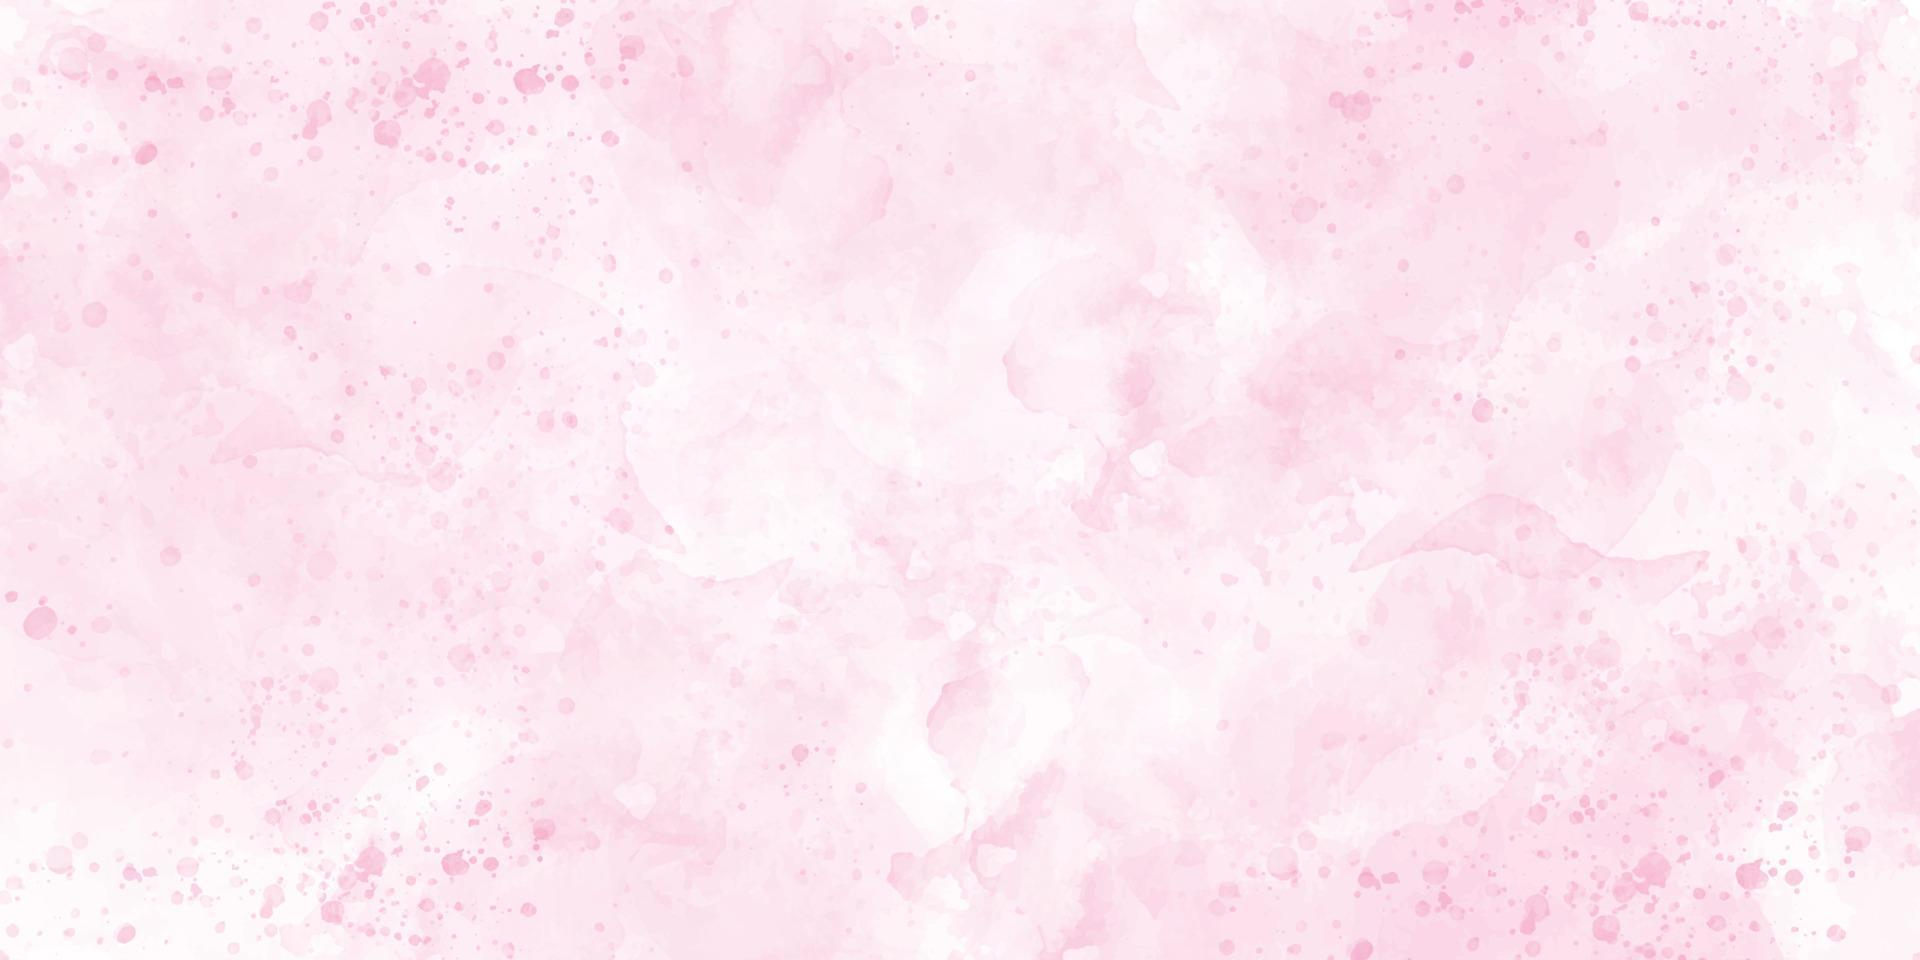 zacht roze waterverf achtergrond, kleur spatten, waterverf abstract nat hand- getrokken voor behang, kaart groet, poster, ontwerp, omslag, uitnodiging. vector illustratie